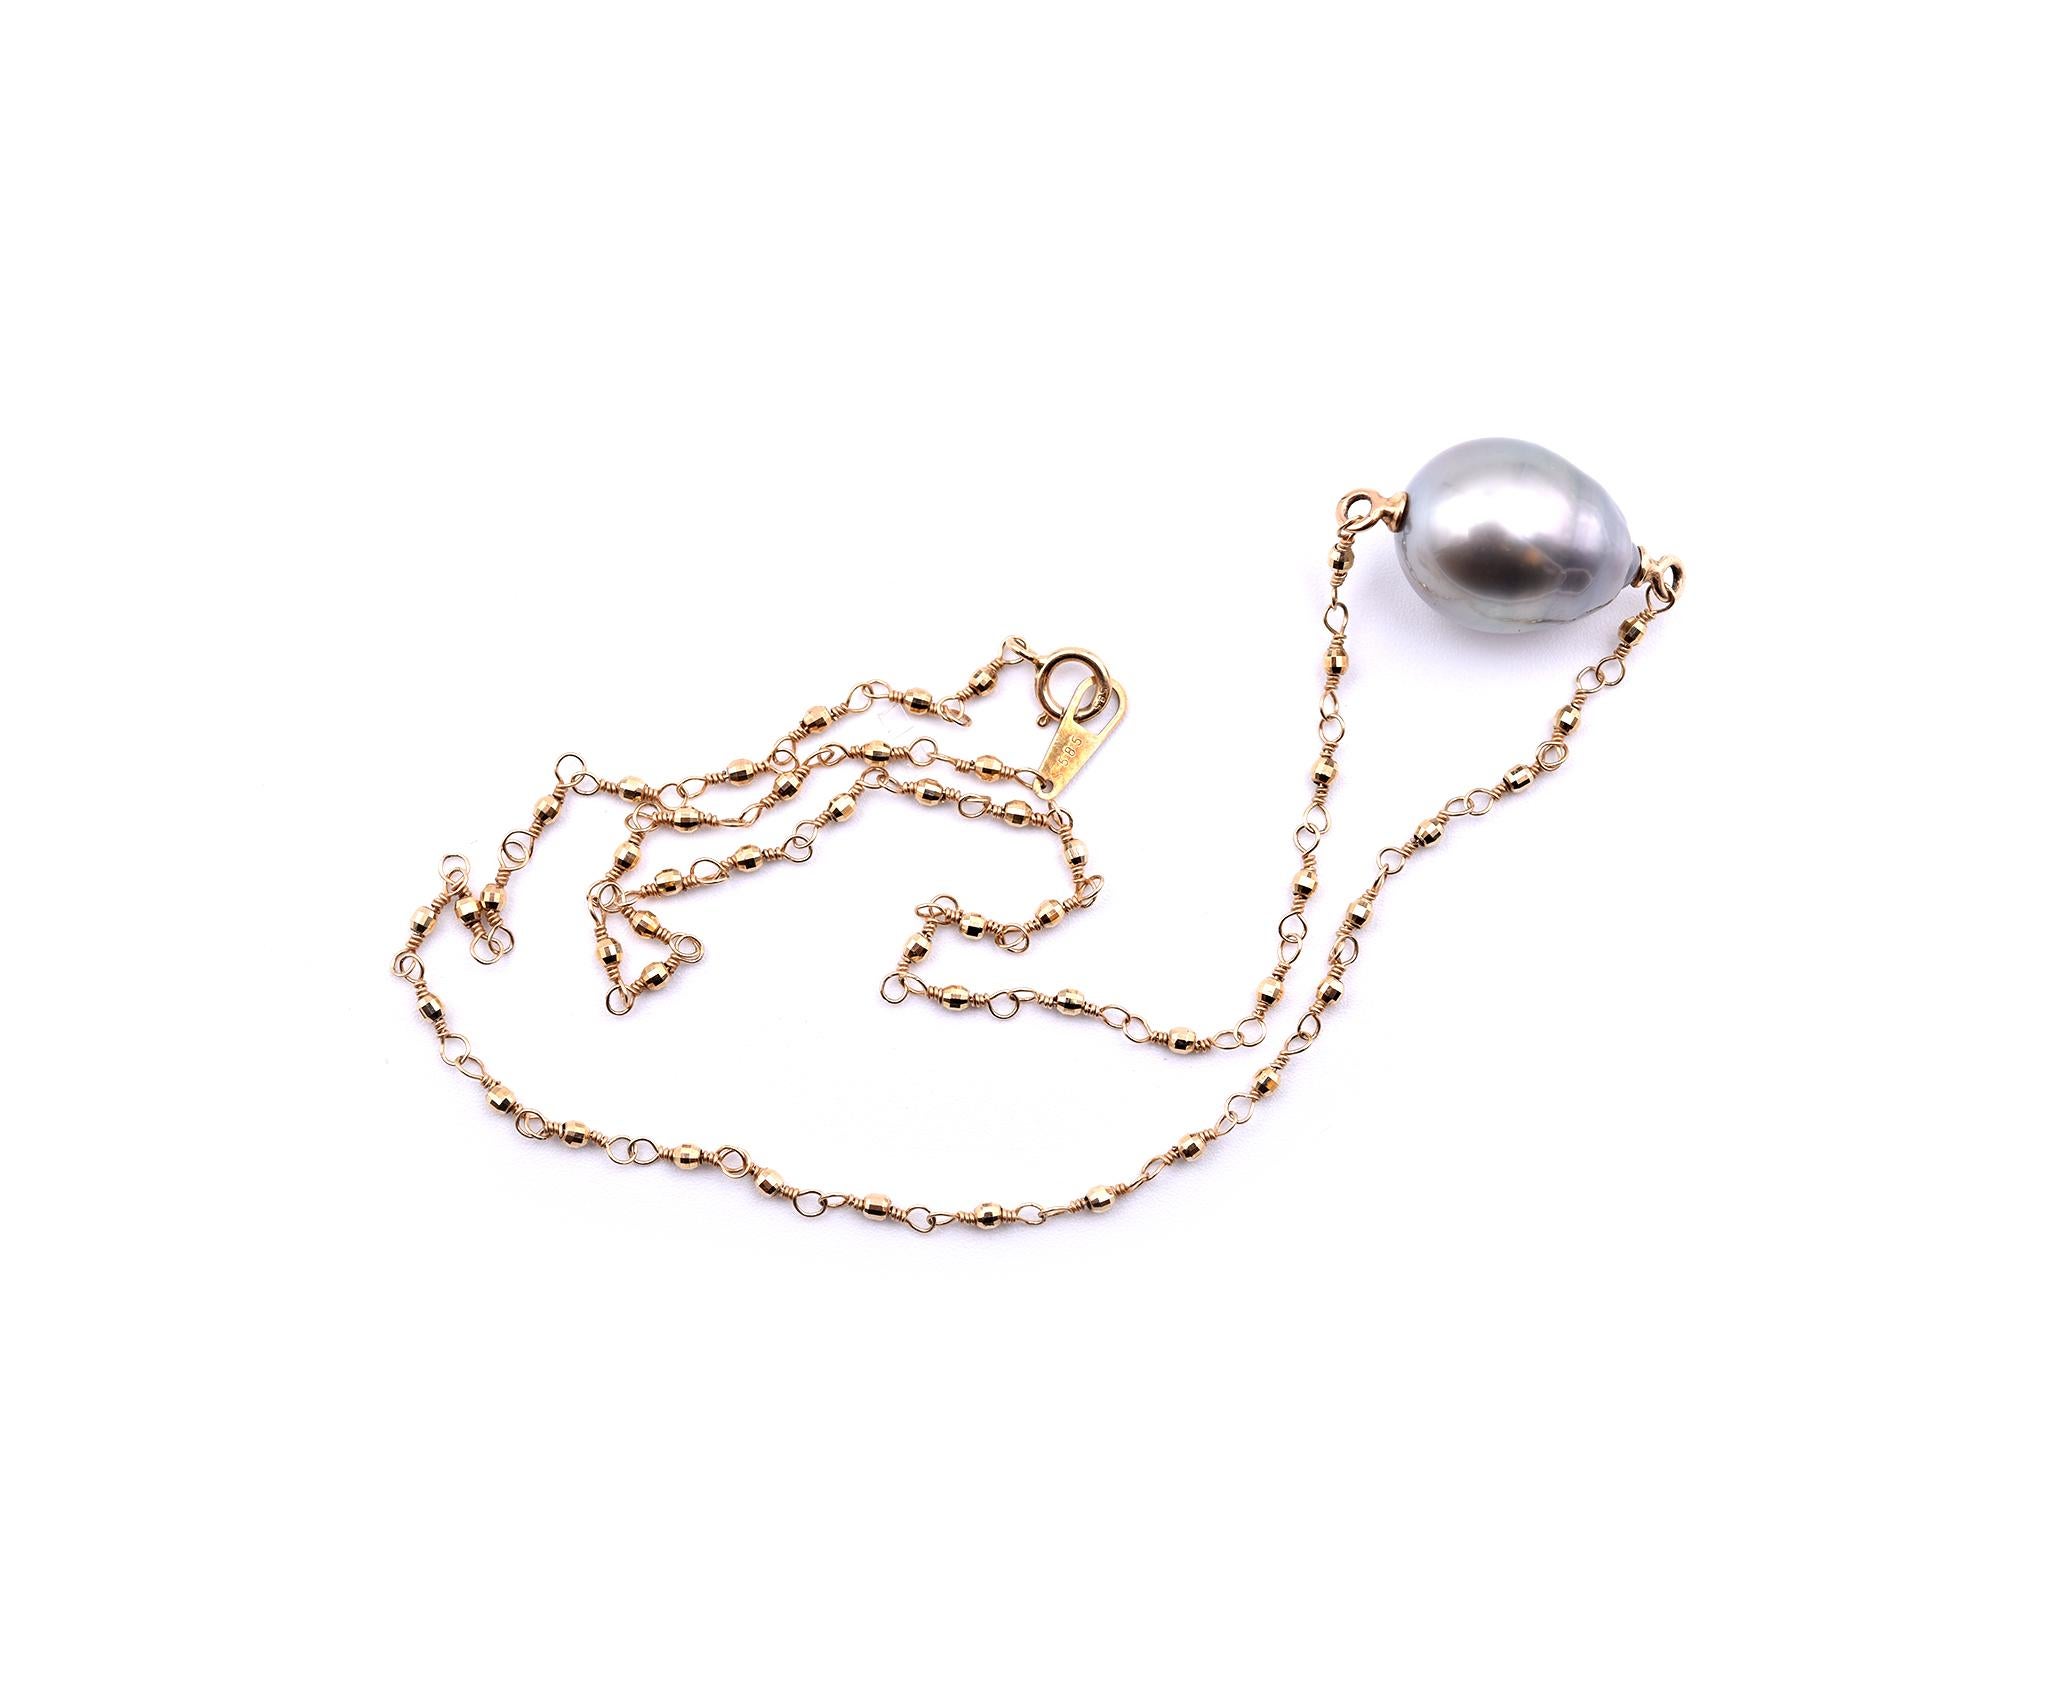 Concepteur : Mizuki
Matériau : or jaune 14k 
Perle de Tahiti : 1 perle de Tahiti baroque 12.20mm par 15.45mm
Dimensions : Le collier mesure 14 pouces de long 
Poids : 5,34 grammes
